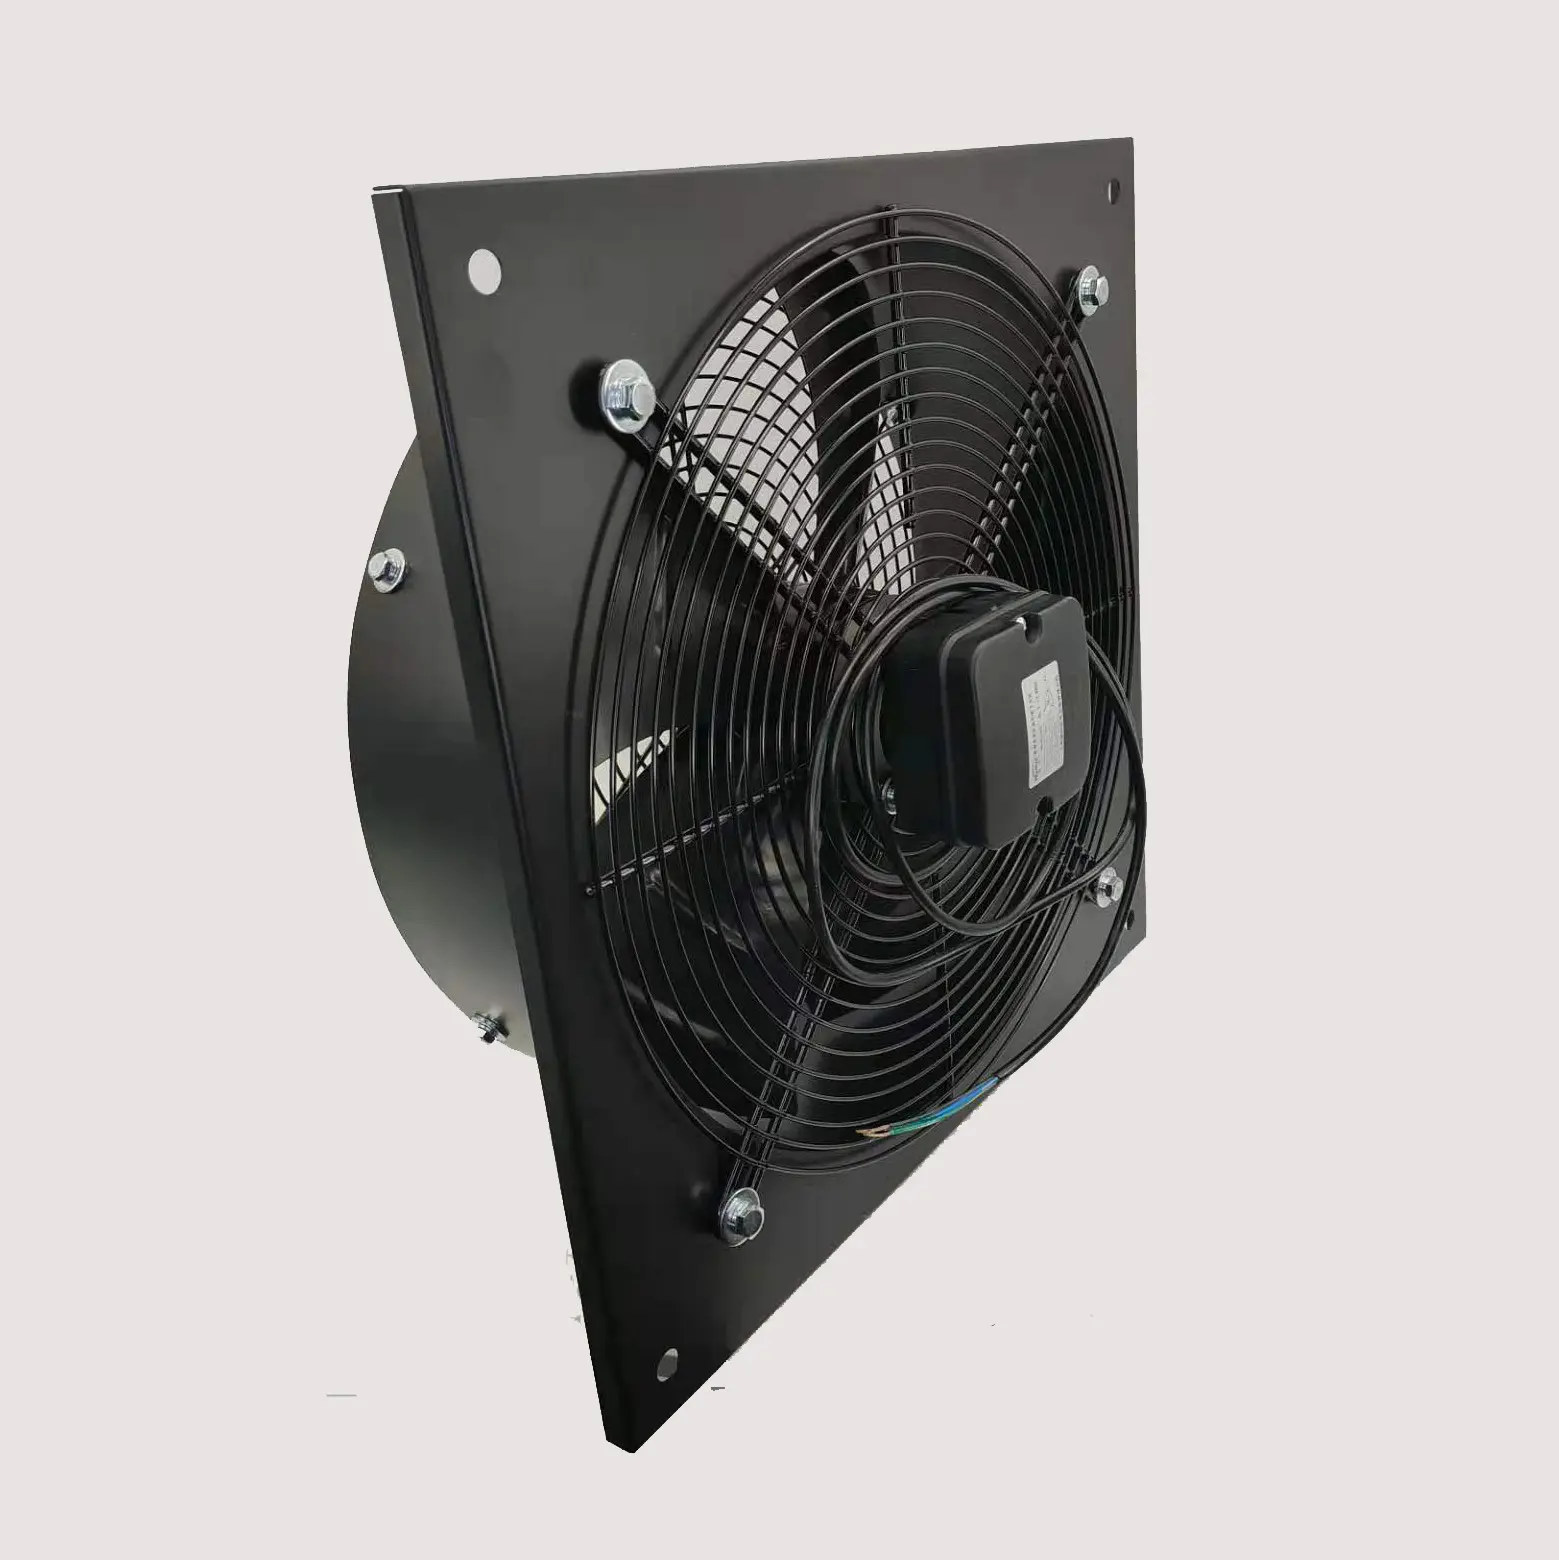 400mm 220v Carré-Fabricant de plaque chaude ventilateur industriel ventilateur d'extraction de cuisine ventilateur haute température